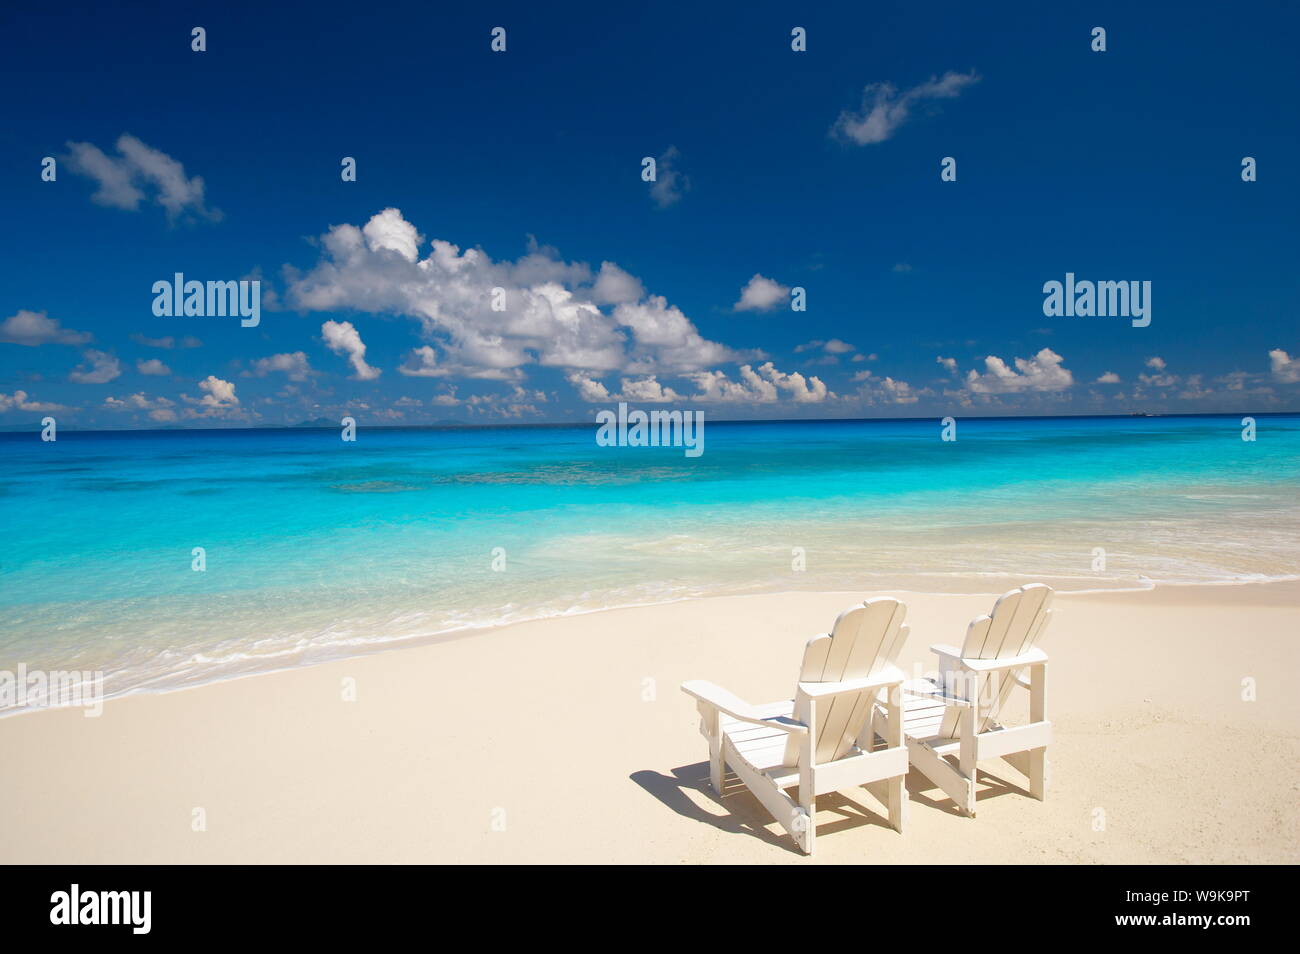 Due sedie a sdraio sulla spiaggia tropicale di fronte al mare, Maldive, Oceano Indiano, Asia Foto Stock